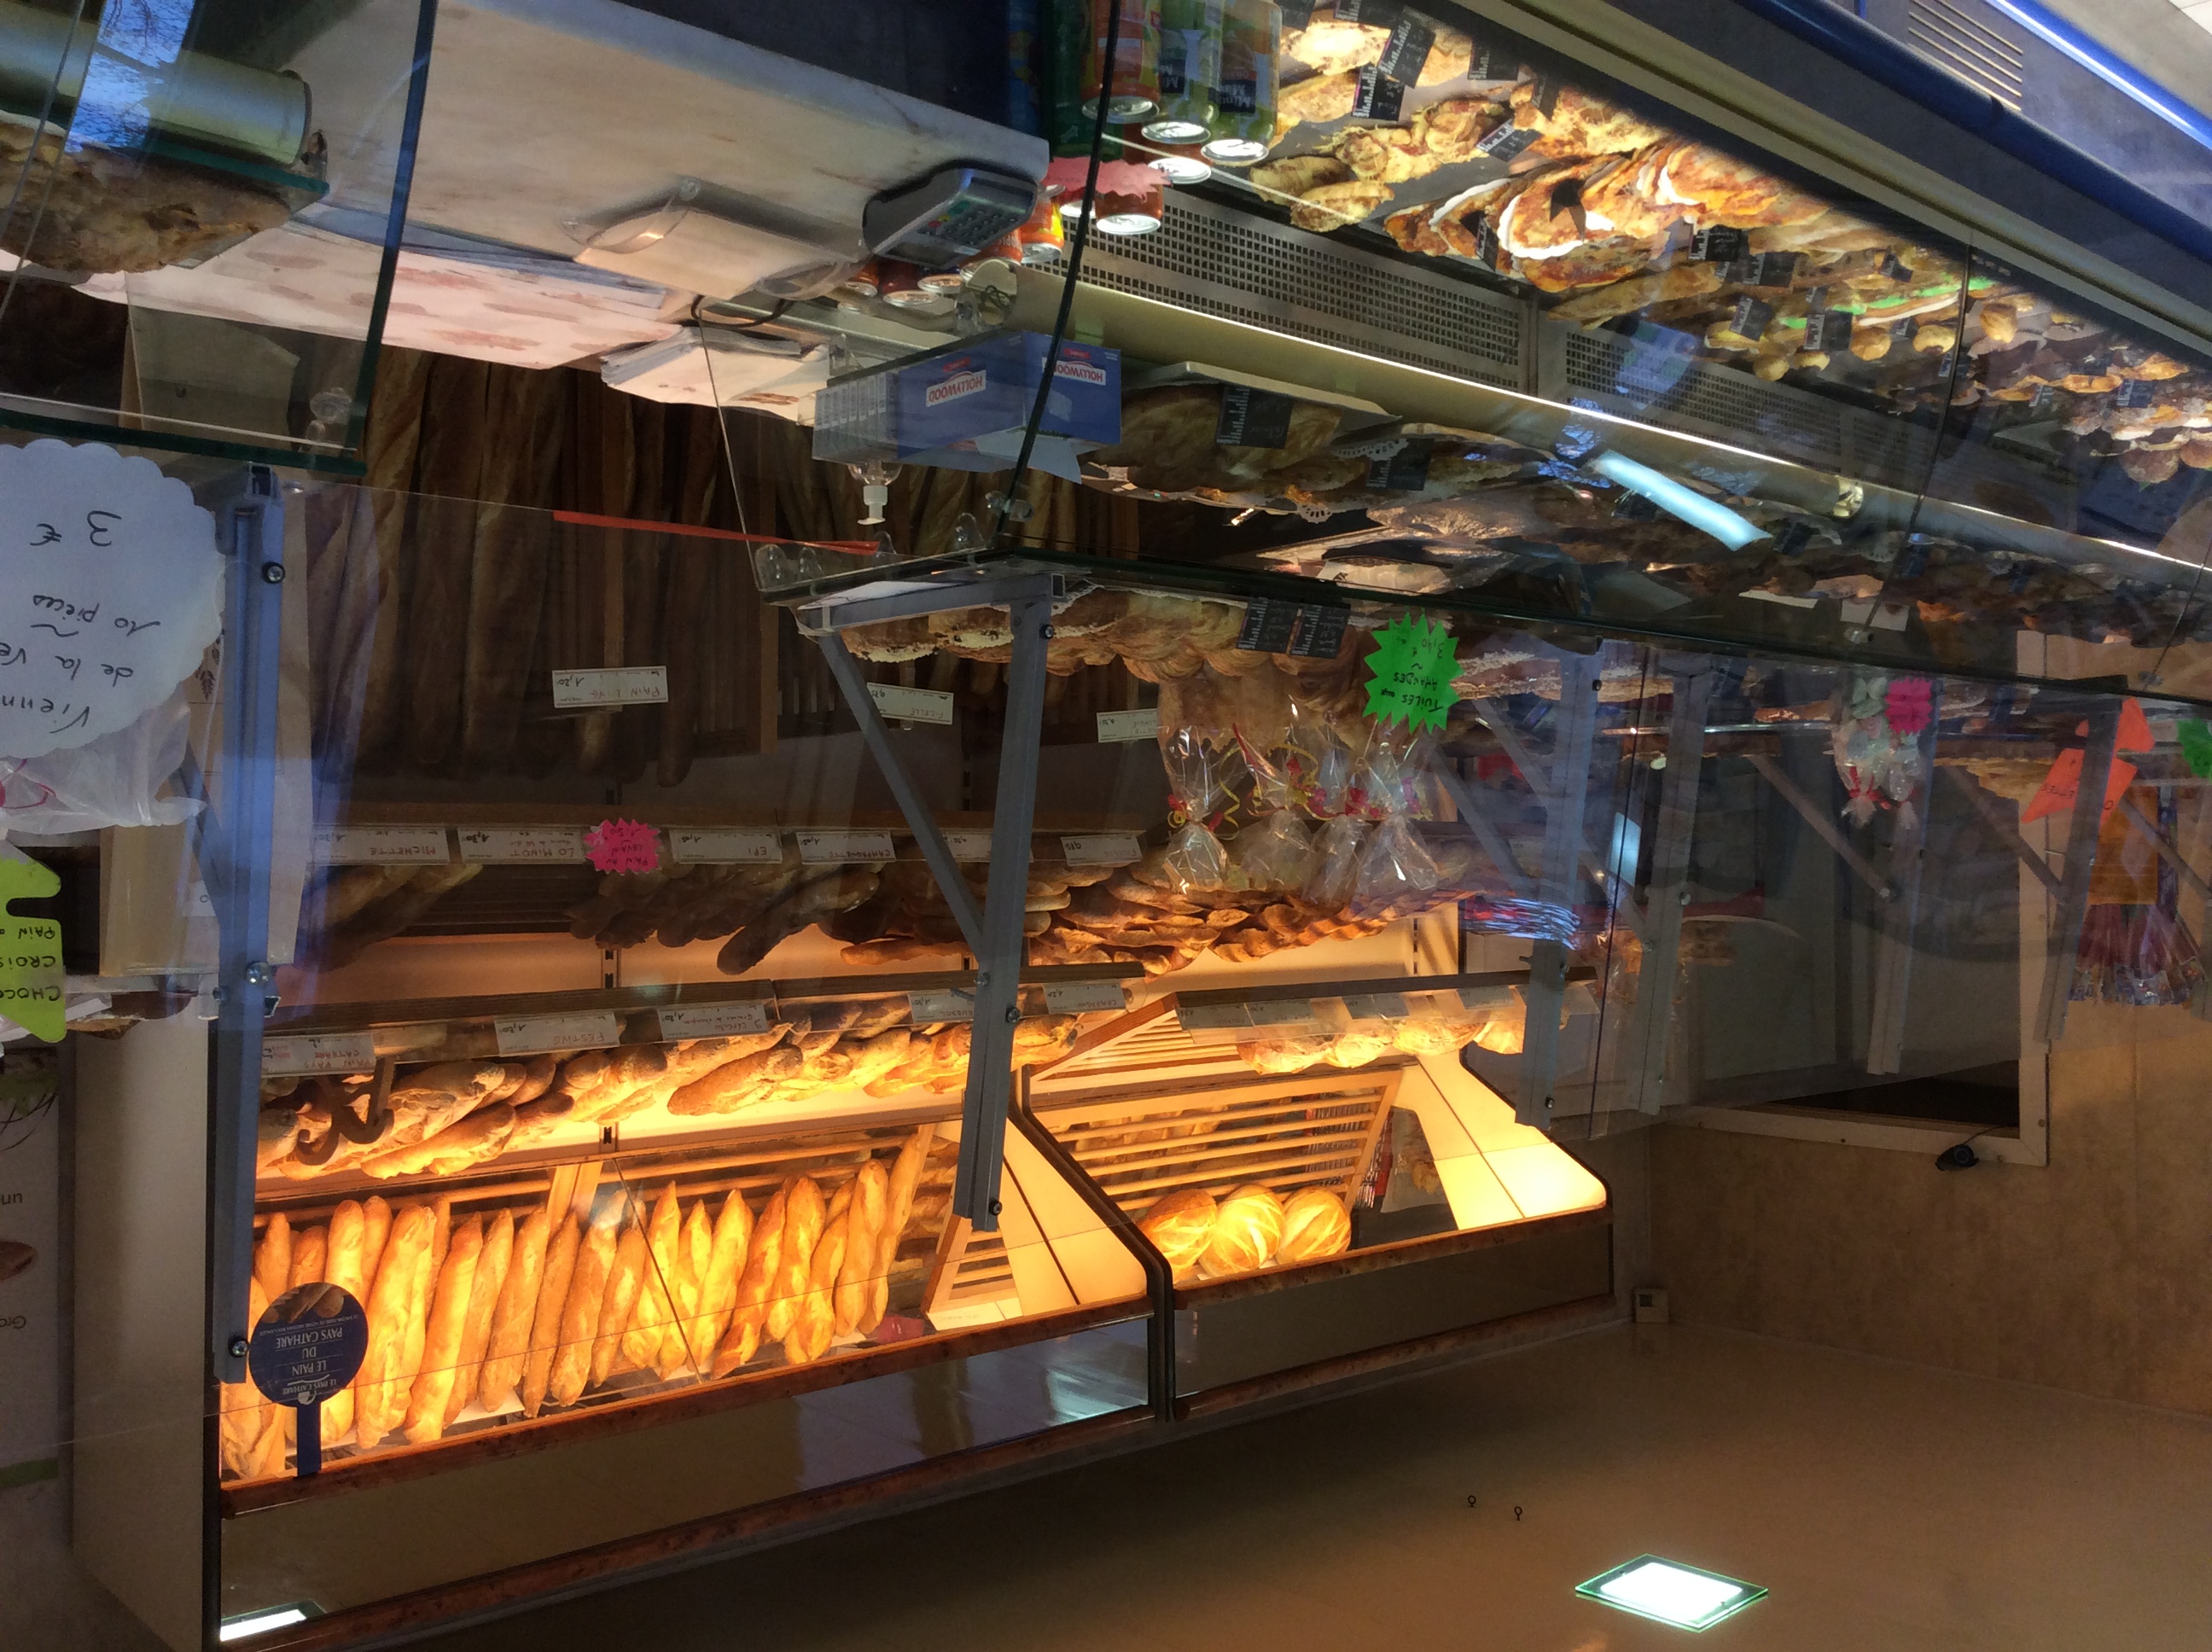 A vendre Boulangerie Pâtisserie
proche de Carcassonne, sur route à grand passage RN113.
Magasin et labo climatisé.
Labo de 85 m2 , magasin 30 m2
Fermé dimanche après midi et lundi.
5 semaines de congés par an.
Appartement attenant possibilité d’achat des murs.

Chiffre d’affaires 211 636€
EBE 101 100€

A vendre 200 000€